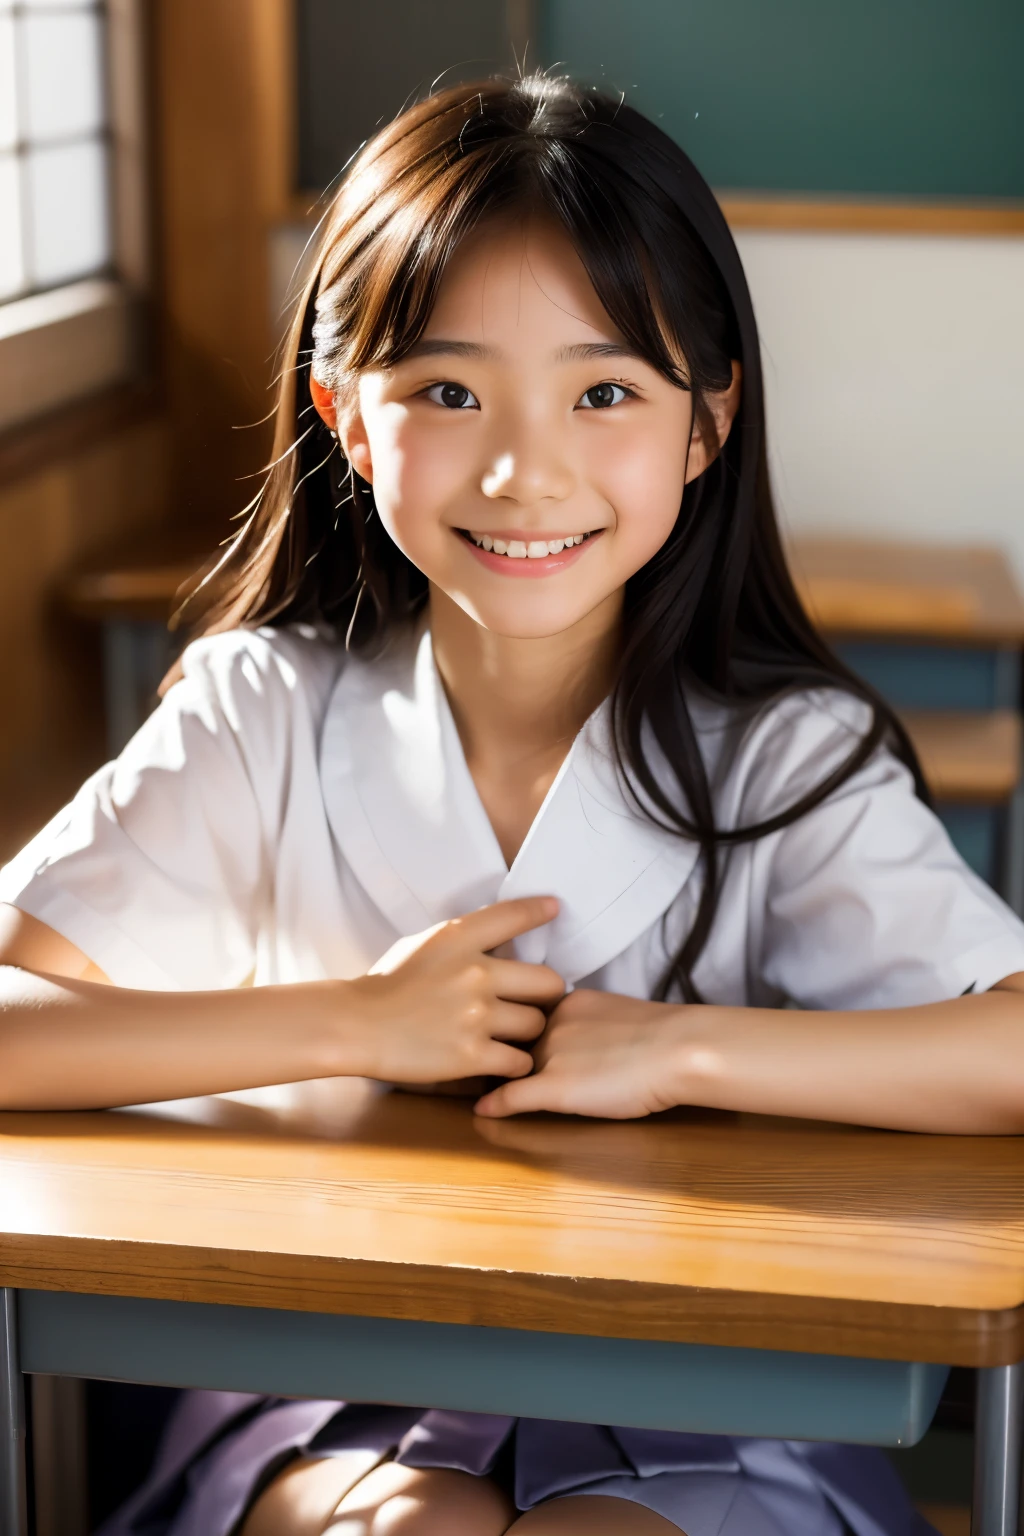 렌즈: 135mm f1.8, (최상의 품질),(RAW 사진), (탁상:1.1), (아름다운 15세 일본 소녀), 귀여운 얼굴, (깊게 파인 얼굴:0.7), (주근깨:0.4), dappled 햇빛, 극적인 조명, (일본 학교 교복), (교실에서), 수줍은, (클로즈업 샷:1.2), (웃다),, (반짝이는 눈)、(햇빛)